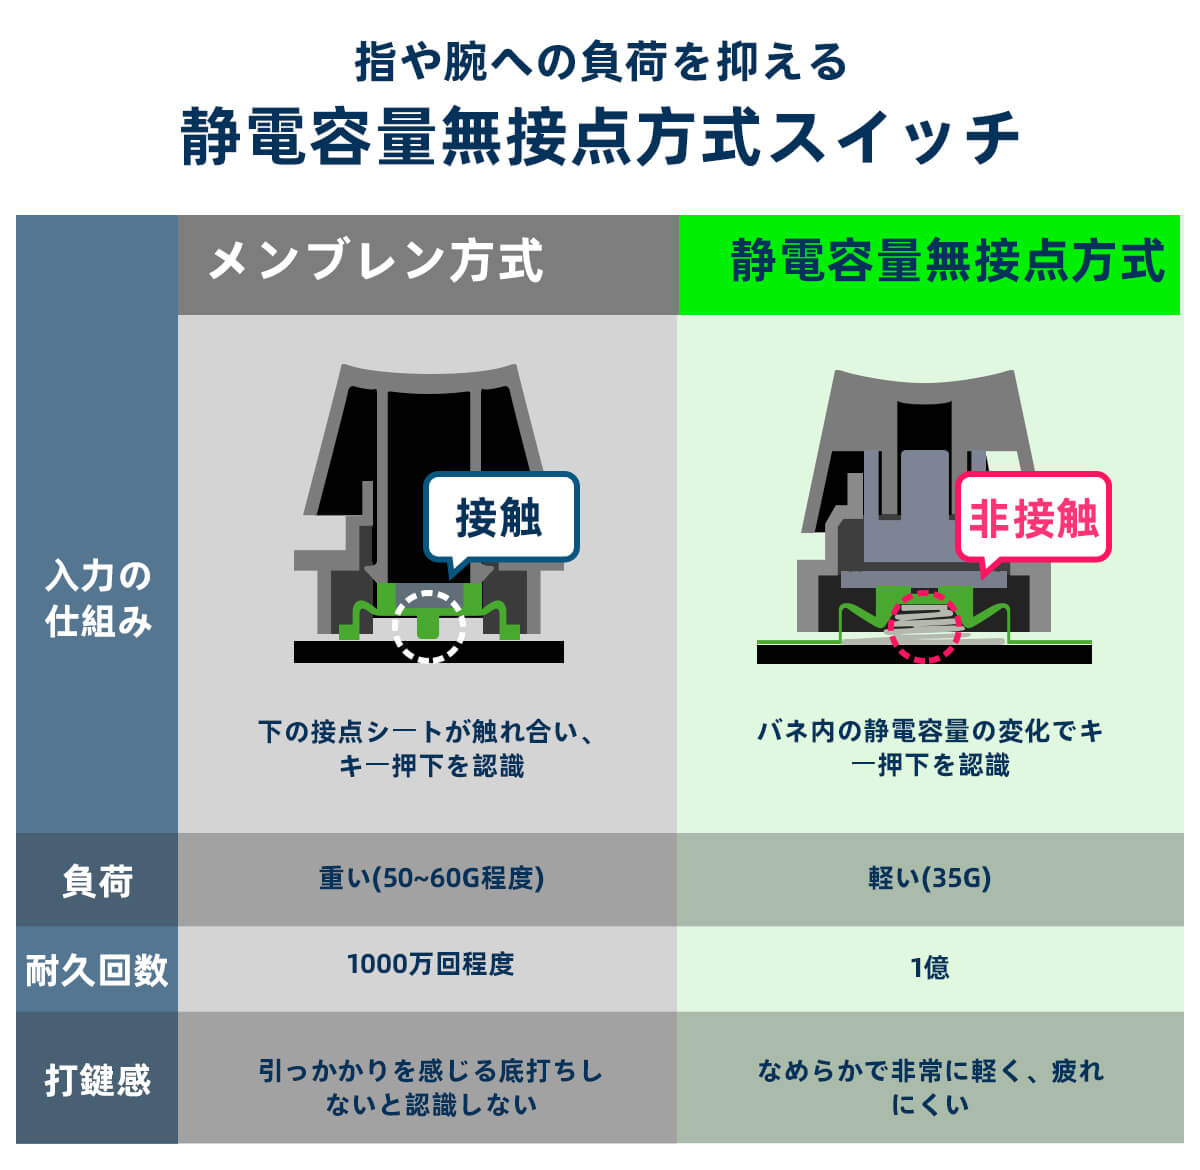 100％安い Niz Atom66 静電容量無接点 前面無刻印 キーボードケース付き asakusa.sub.jp